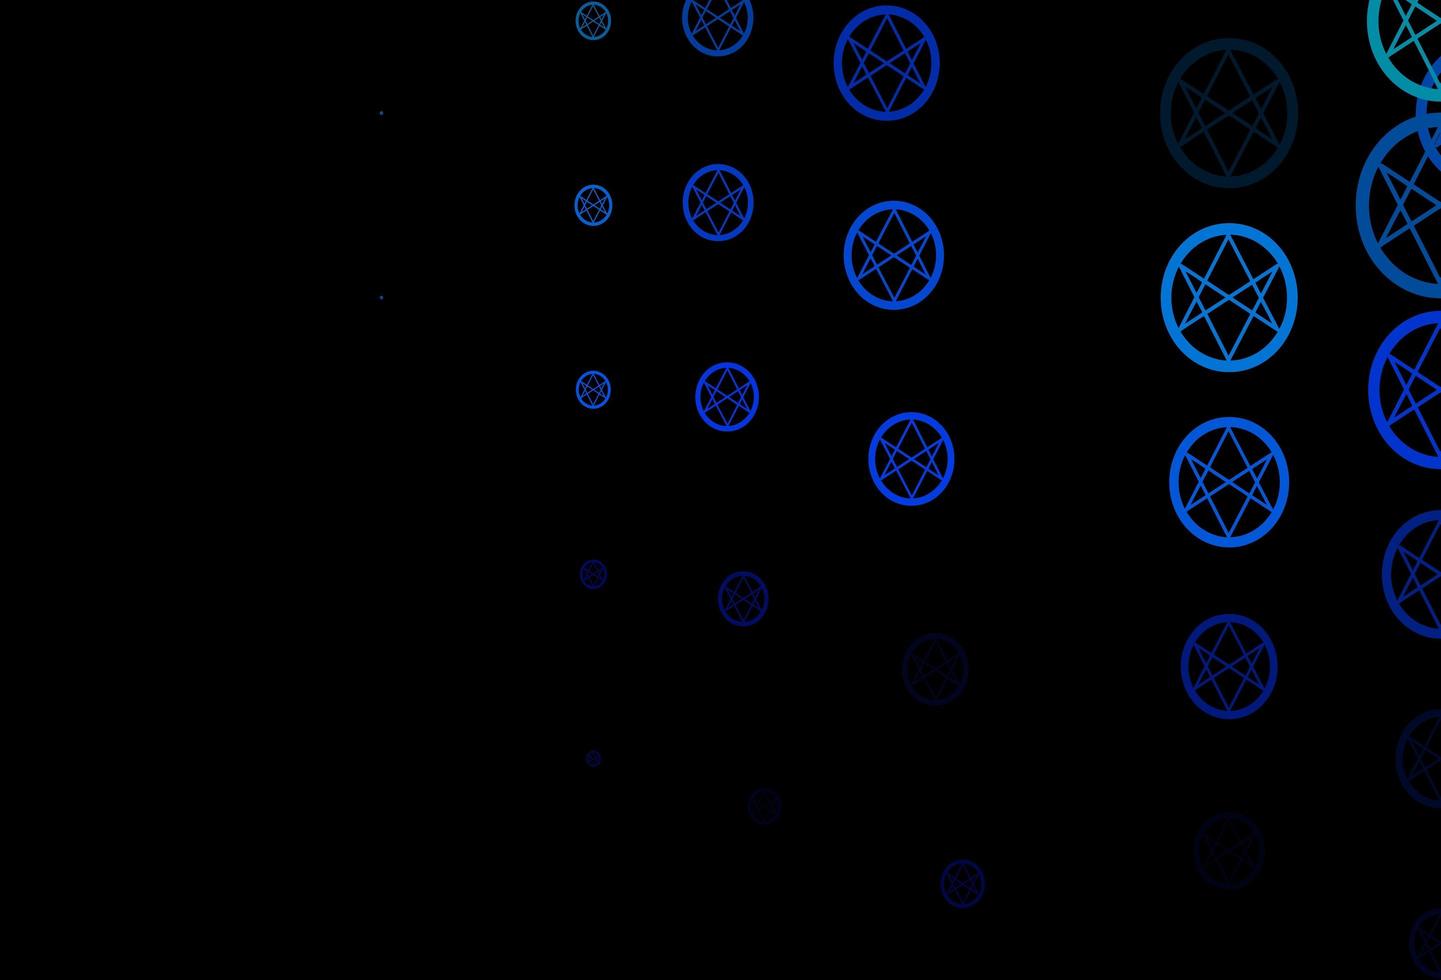 mörkblå grön vektor bakgrund med mysteriesymboler